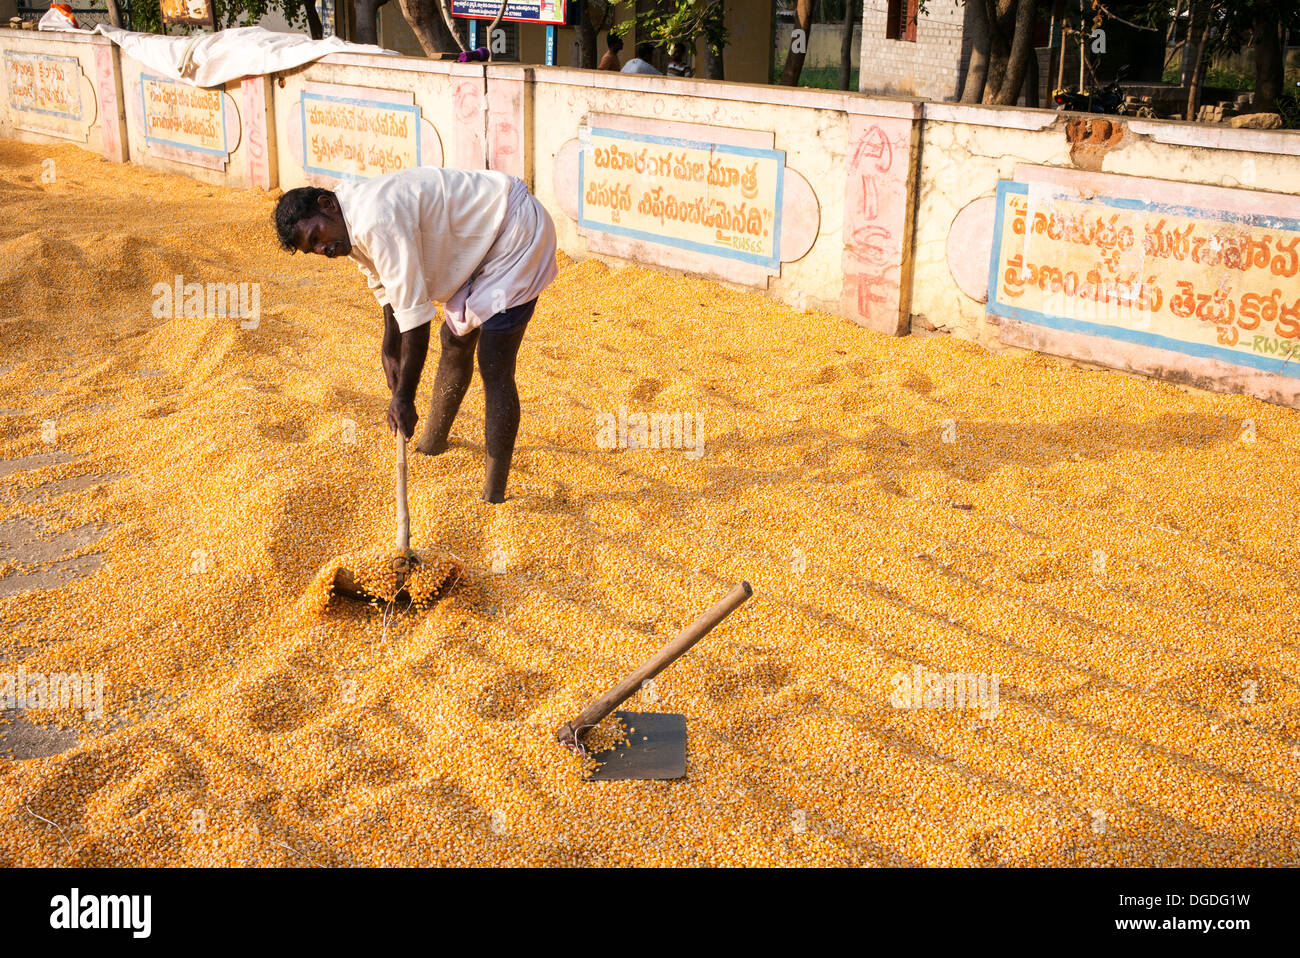 Indischer Mann einsammeln Mais / Mais Körner nach dem Trocknen auf der Straße. Andhra Pradesh, Indien Stockfoto